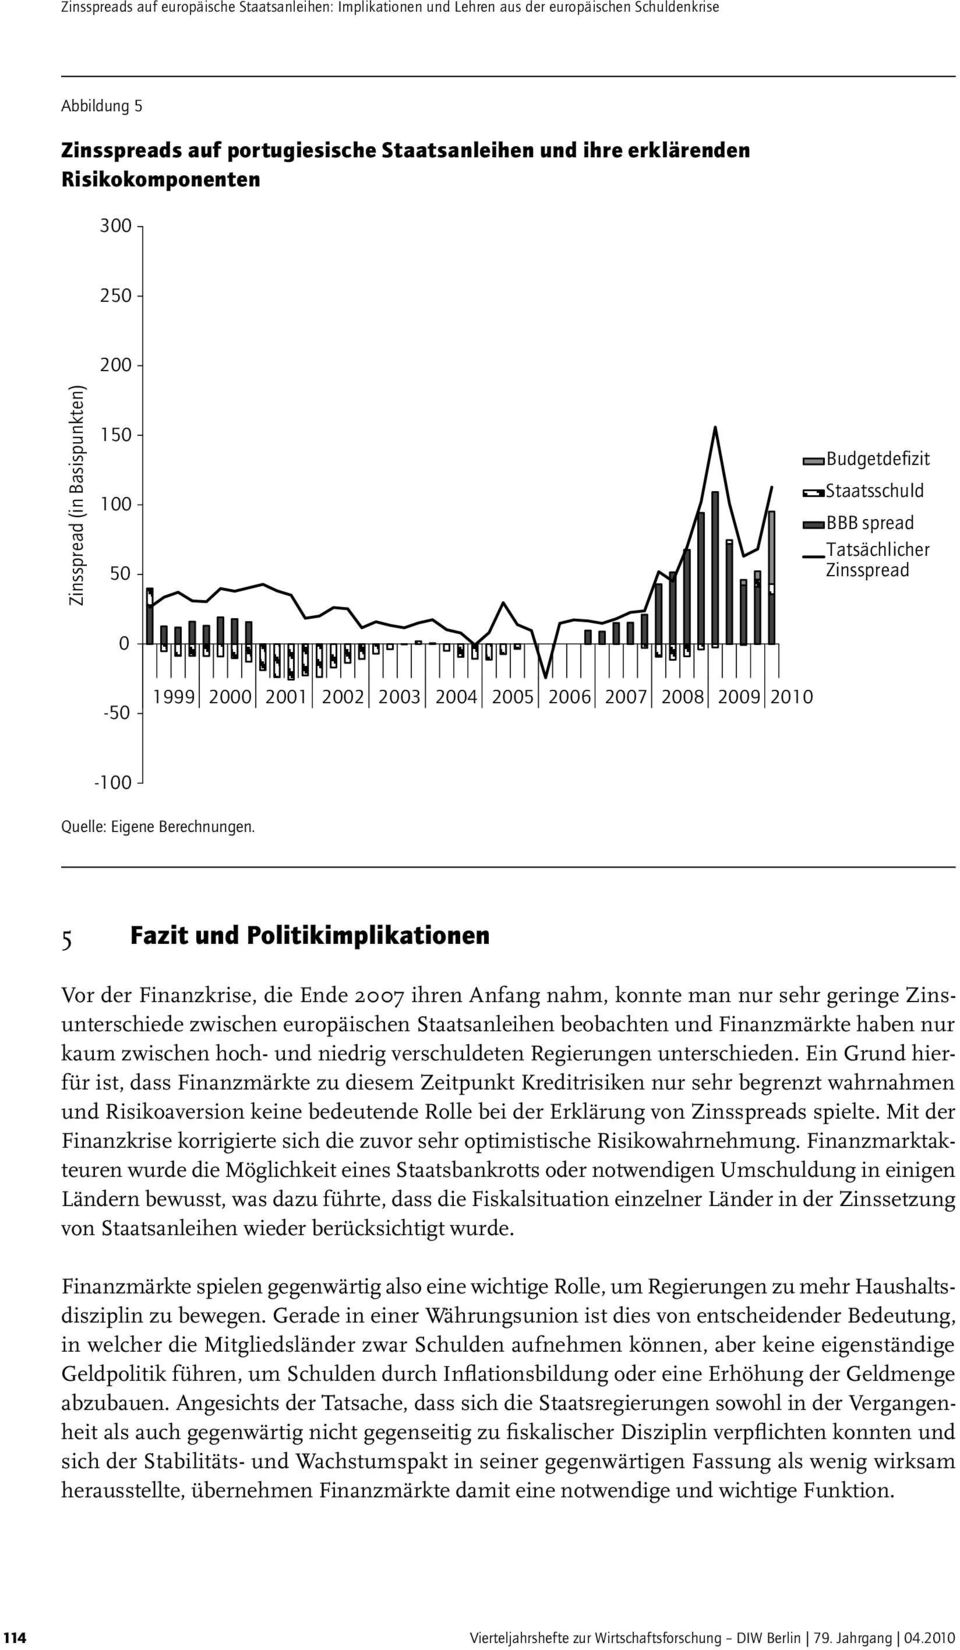 5 Fazit und Politikimplikationen Vor der Finanzkrise, die Ende 27 ihren Anfang nahm, konnte man nur sehr geringe Zinsunterschiede zwischen europäischen Staatsanleihen beobachten und Finanzmärkte